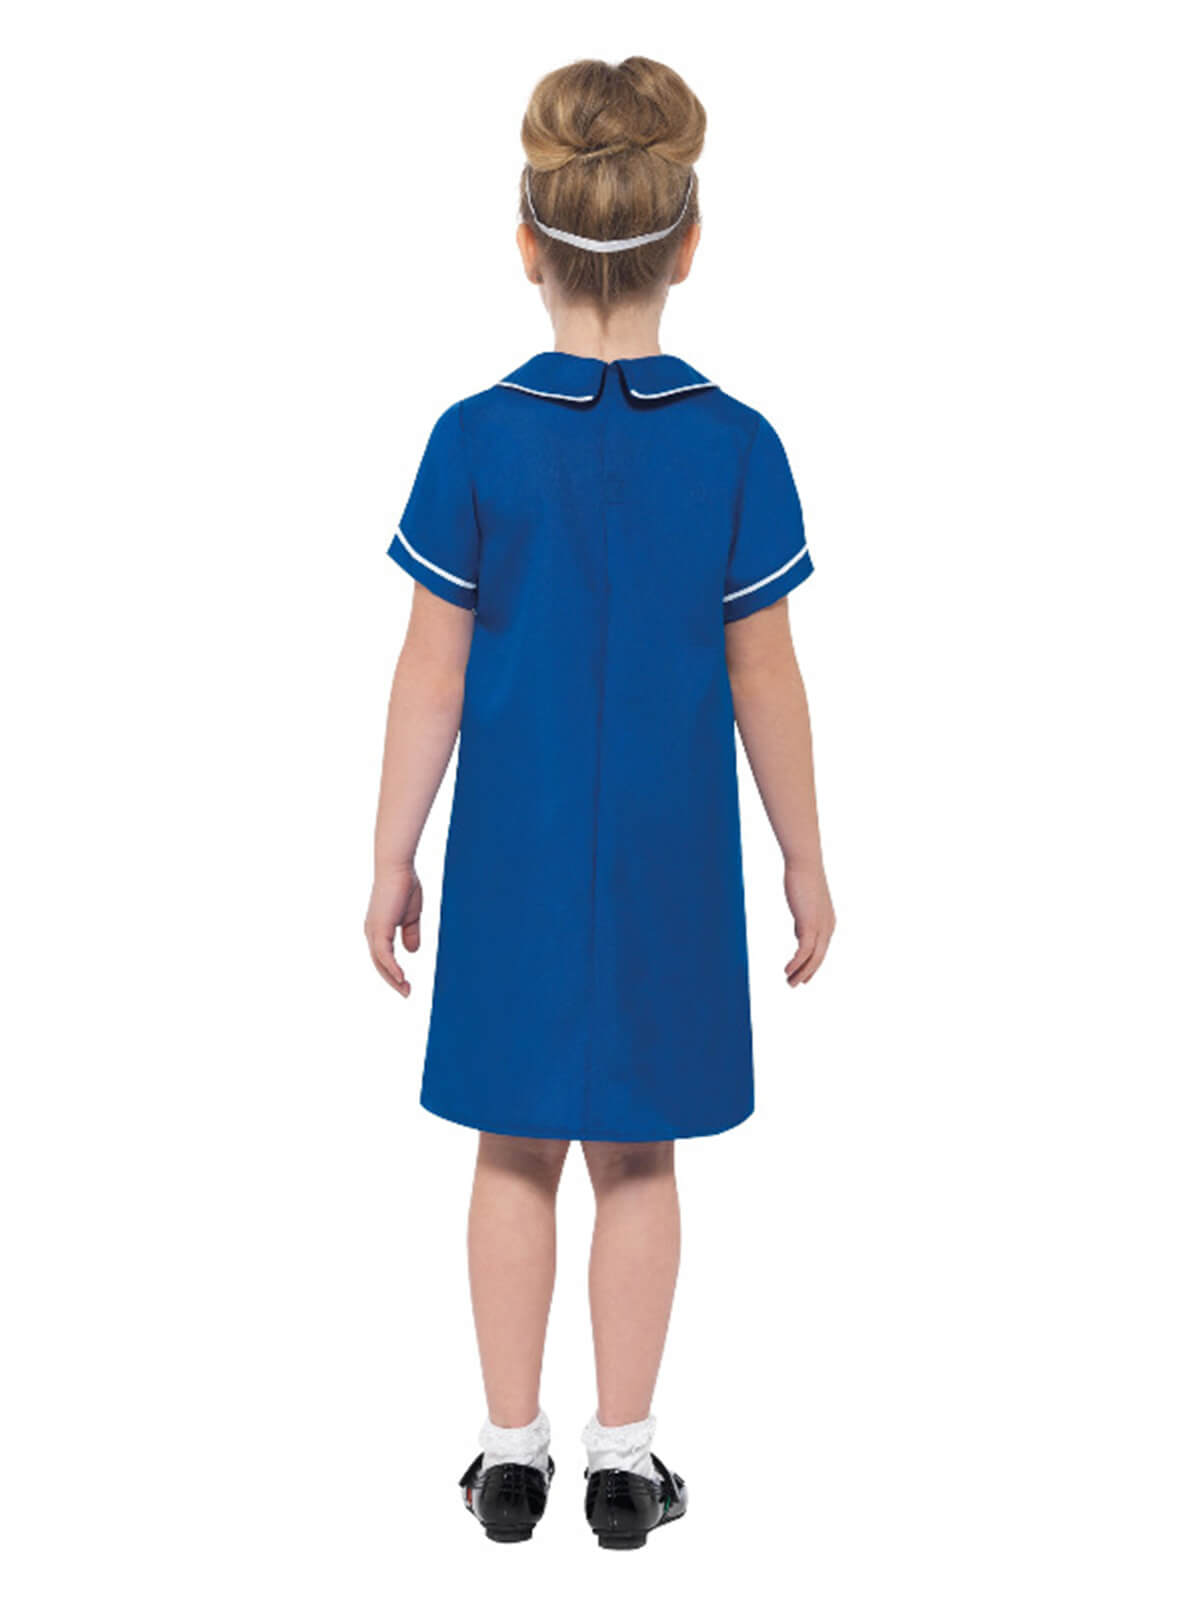 Nurse Costume, Blue